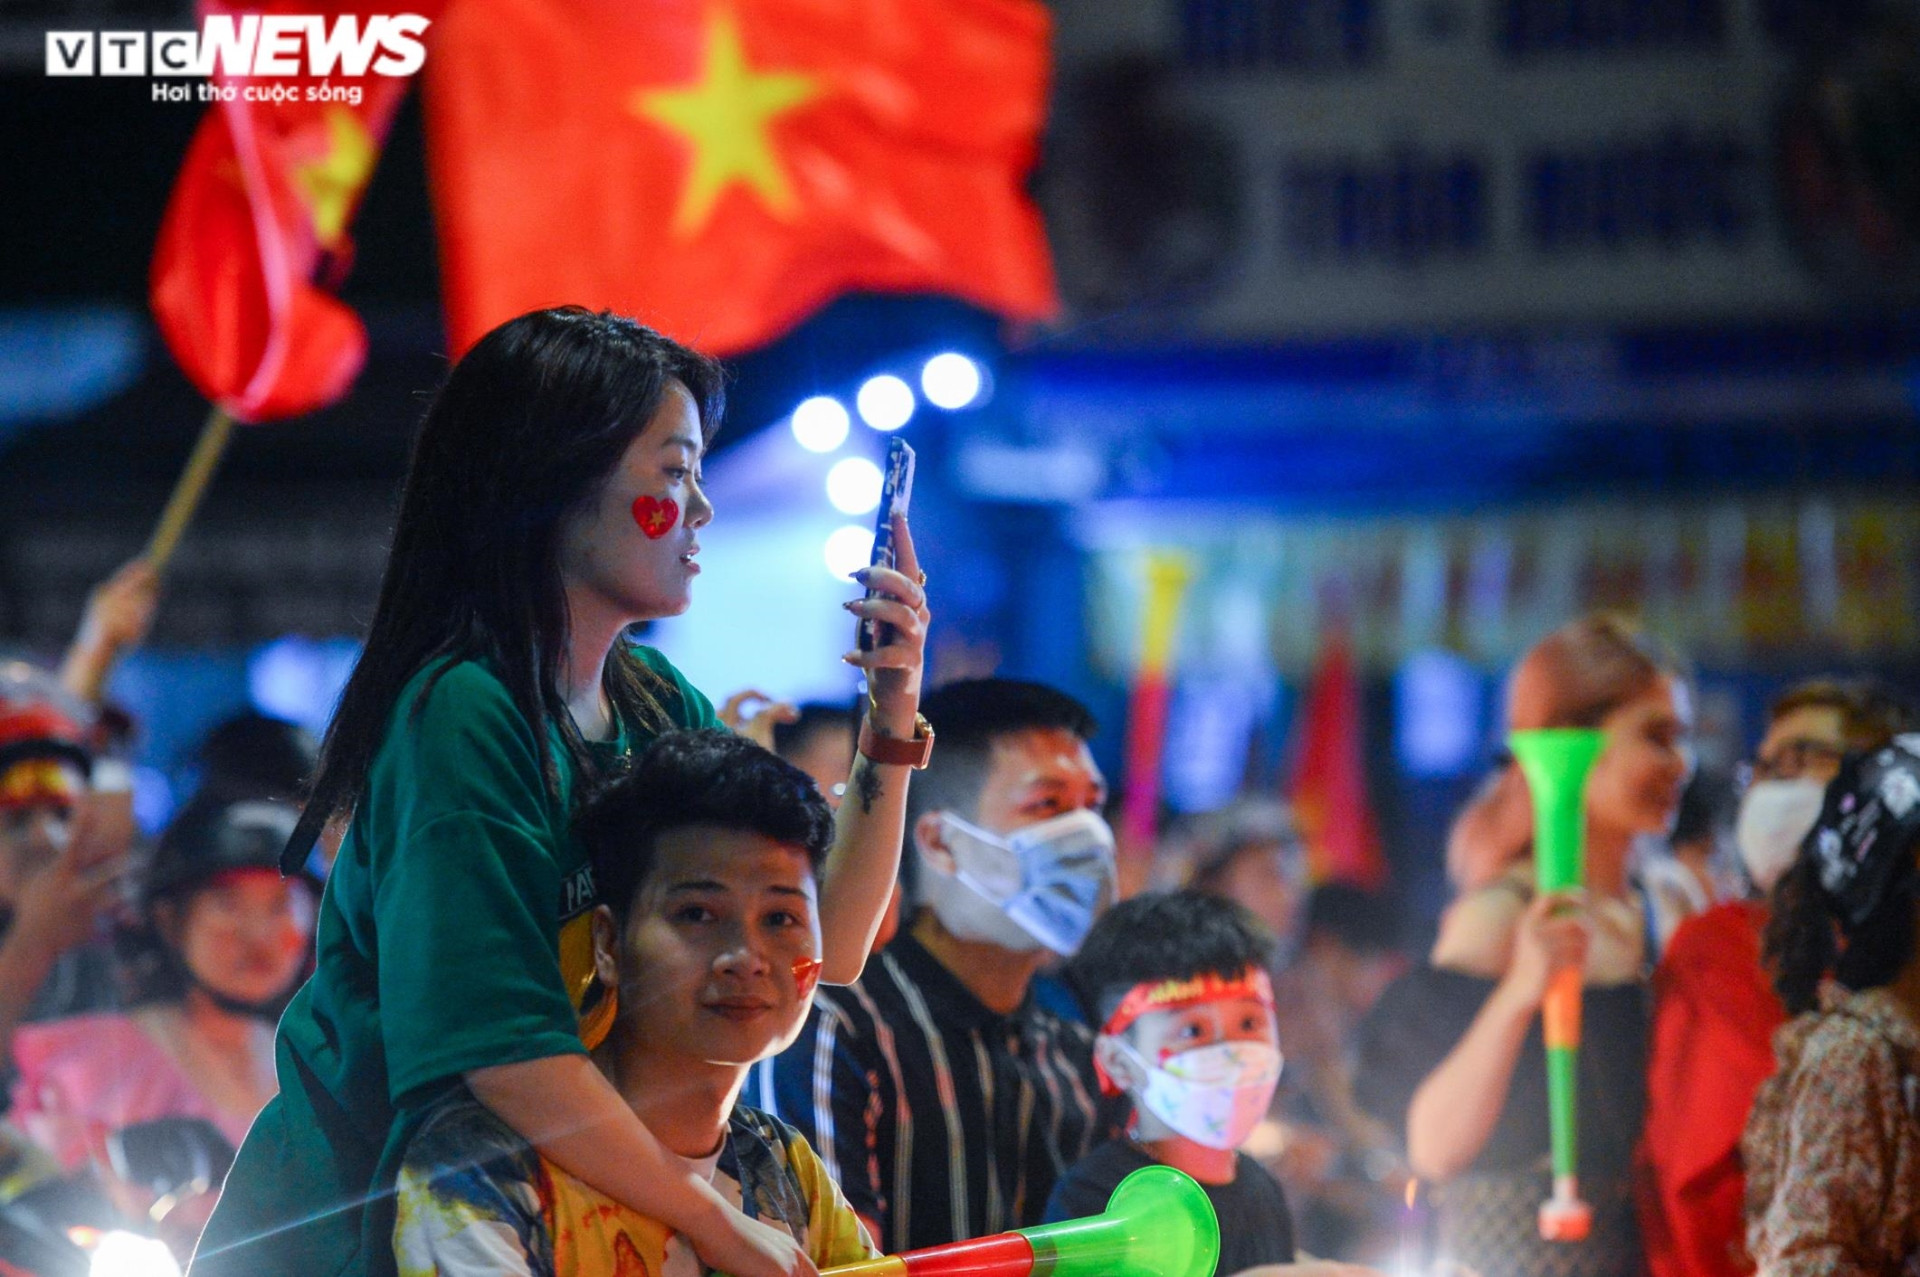 Nửa đêm, CĐV nhí vẫn theo bố mẹ xuống đường mừng U23 Việt Nam vô địch - 10